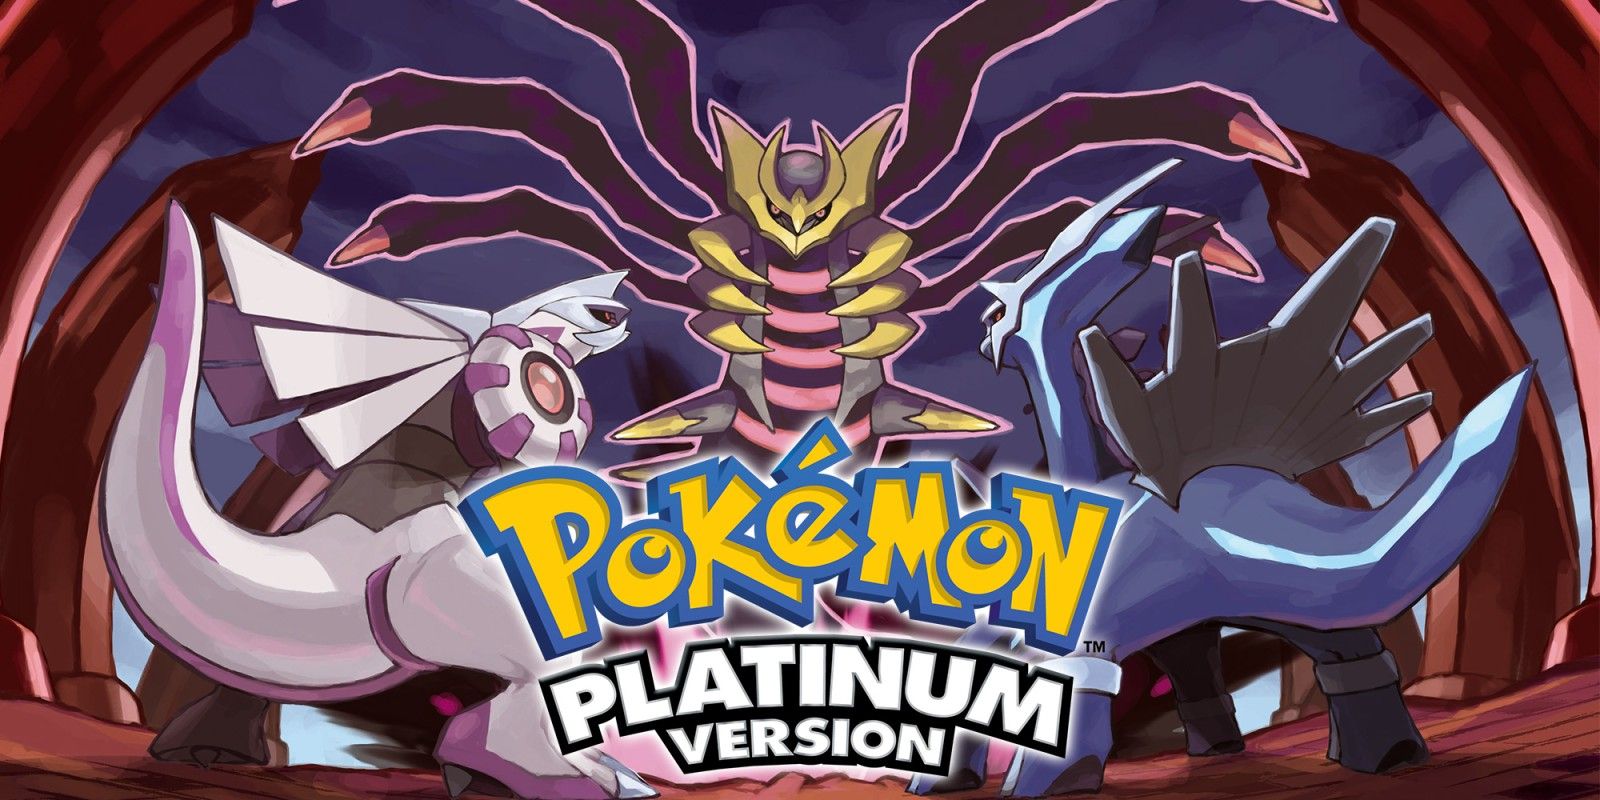 Promo art for Pokemon Platinum